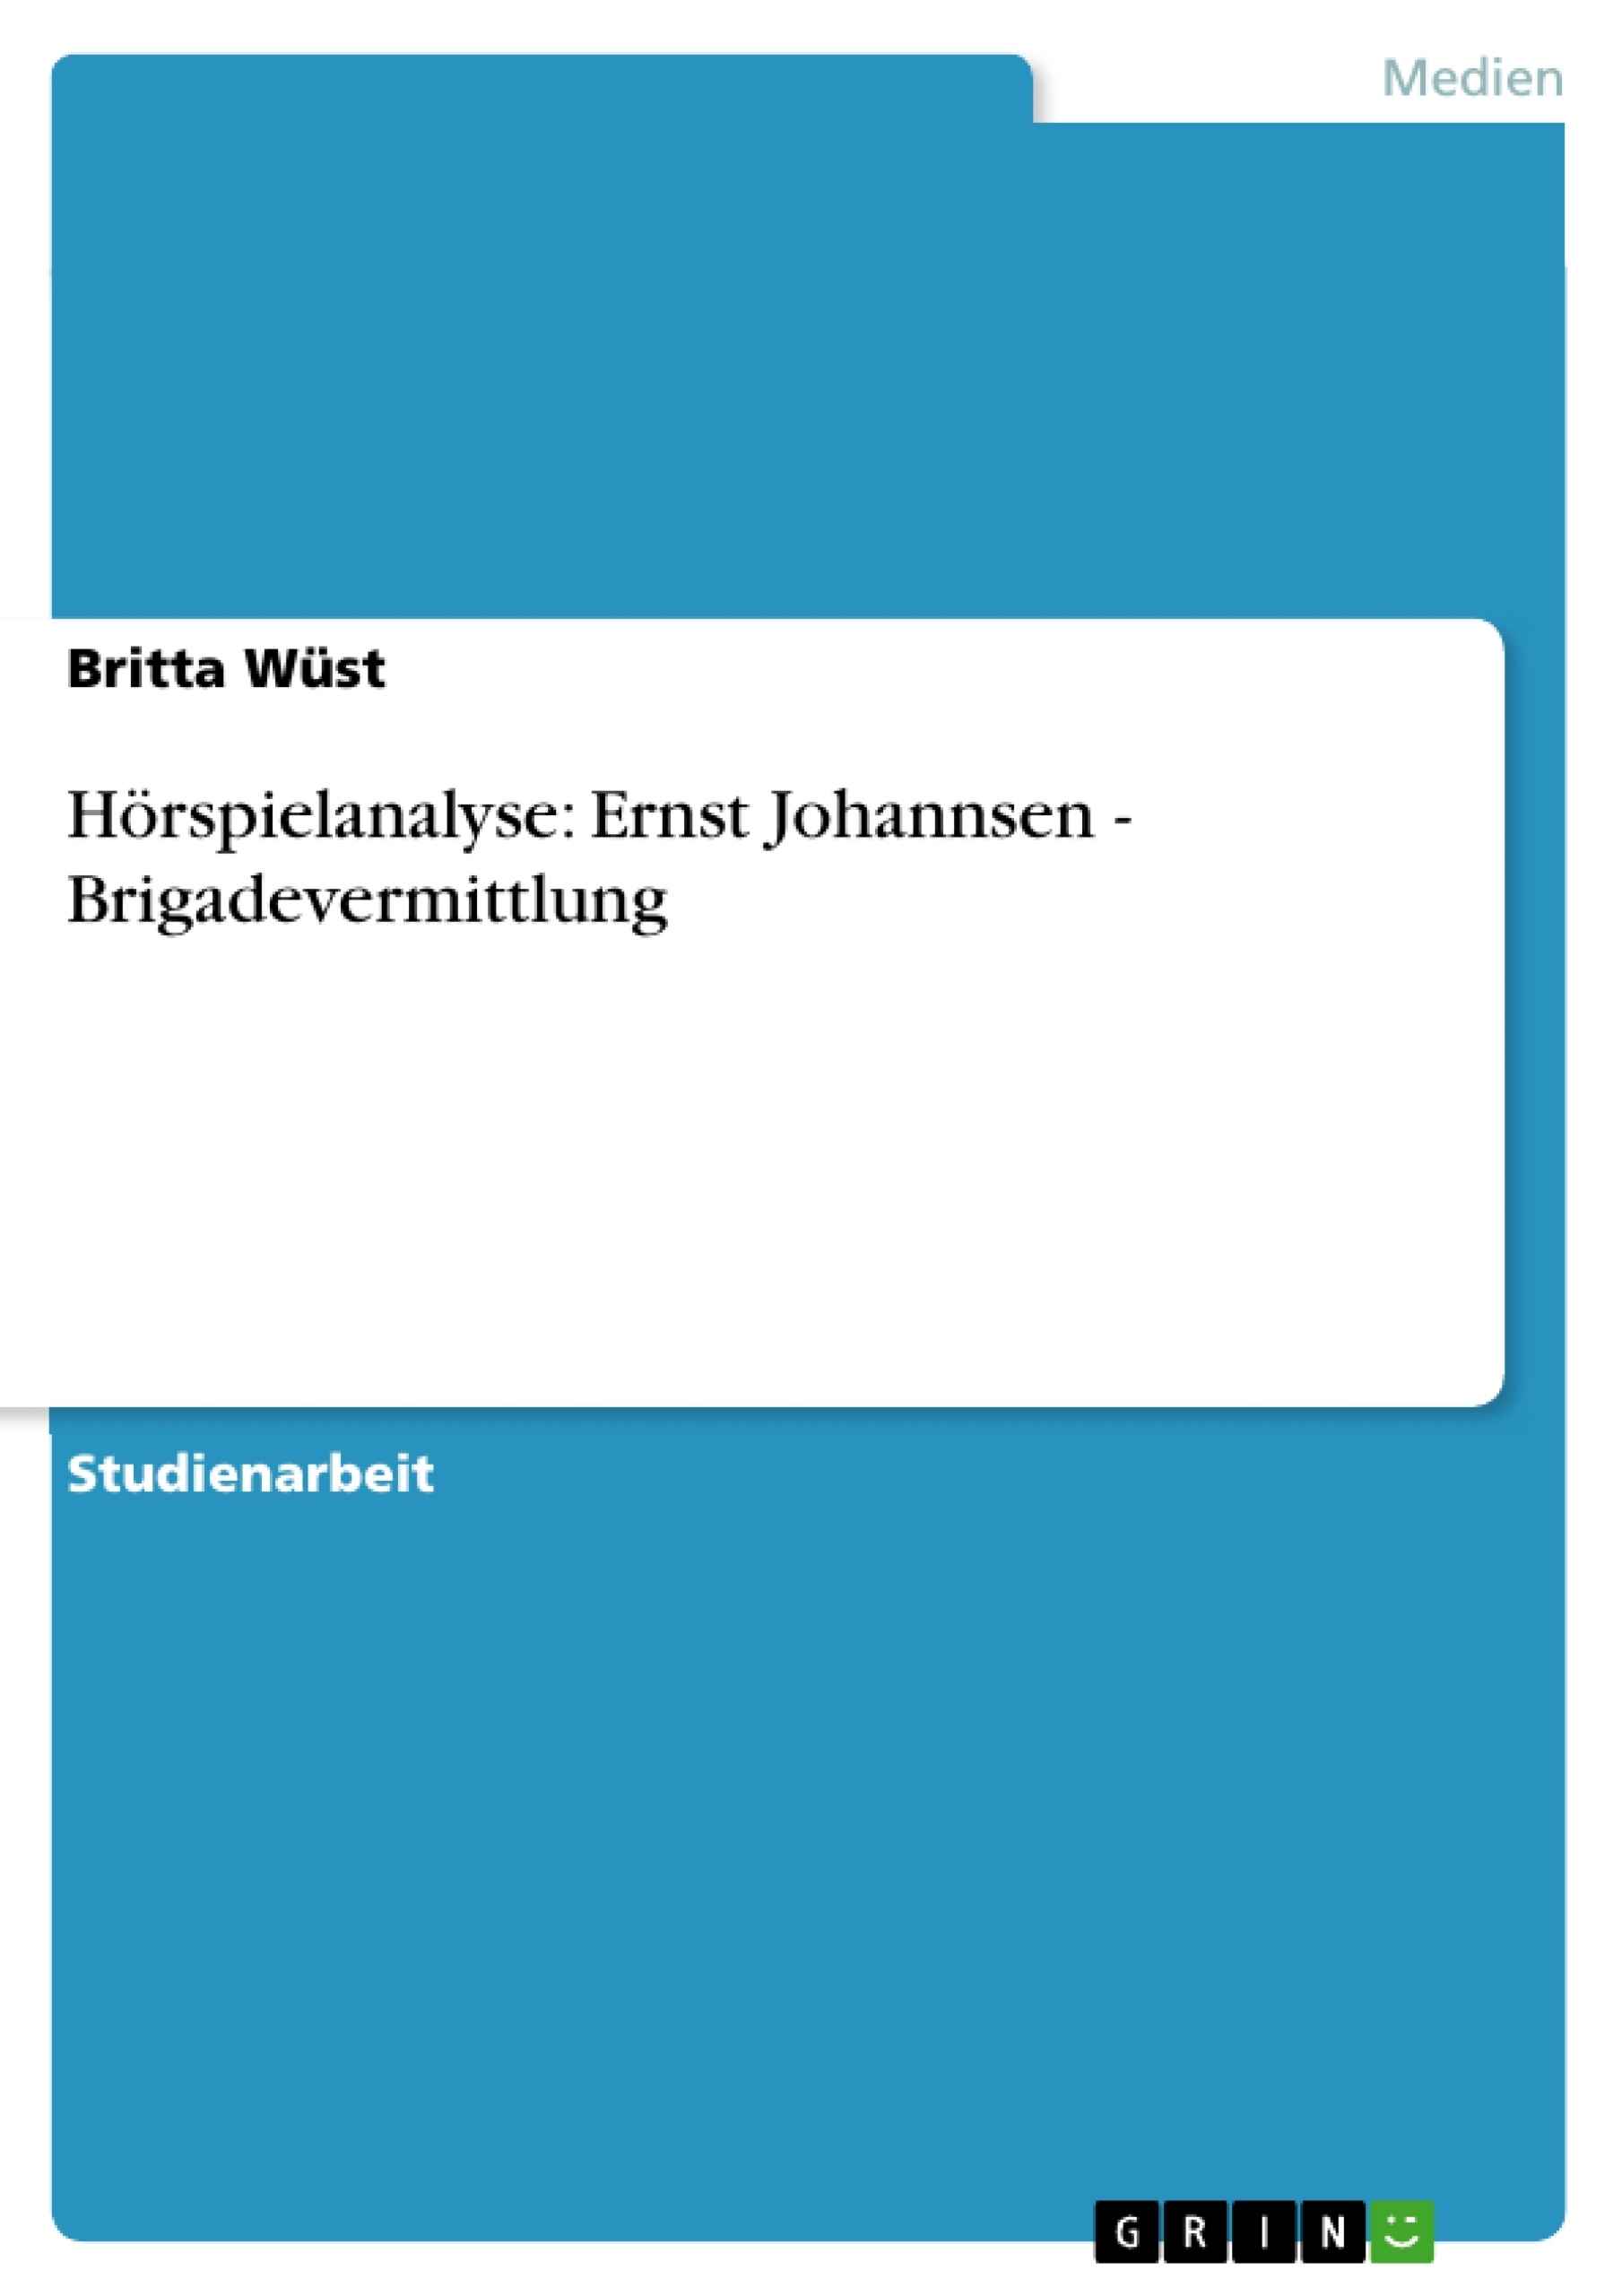 Titre: Hörspielanalyse: Ernst Johannsen - Brigadevermittlung